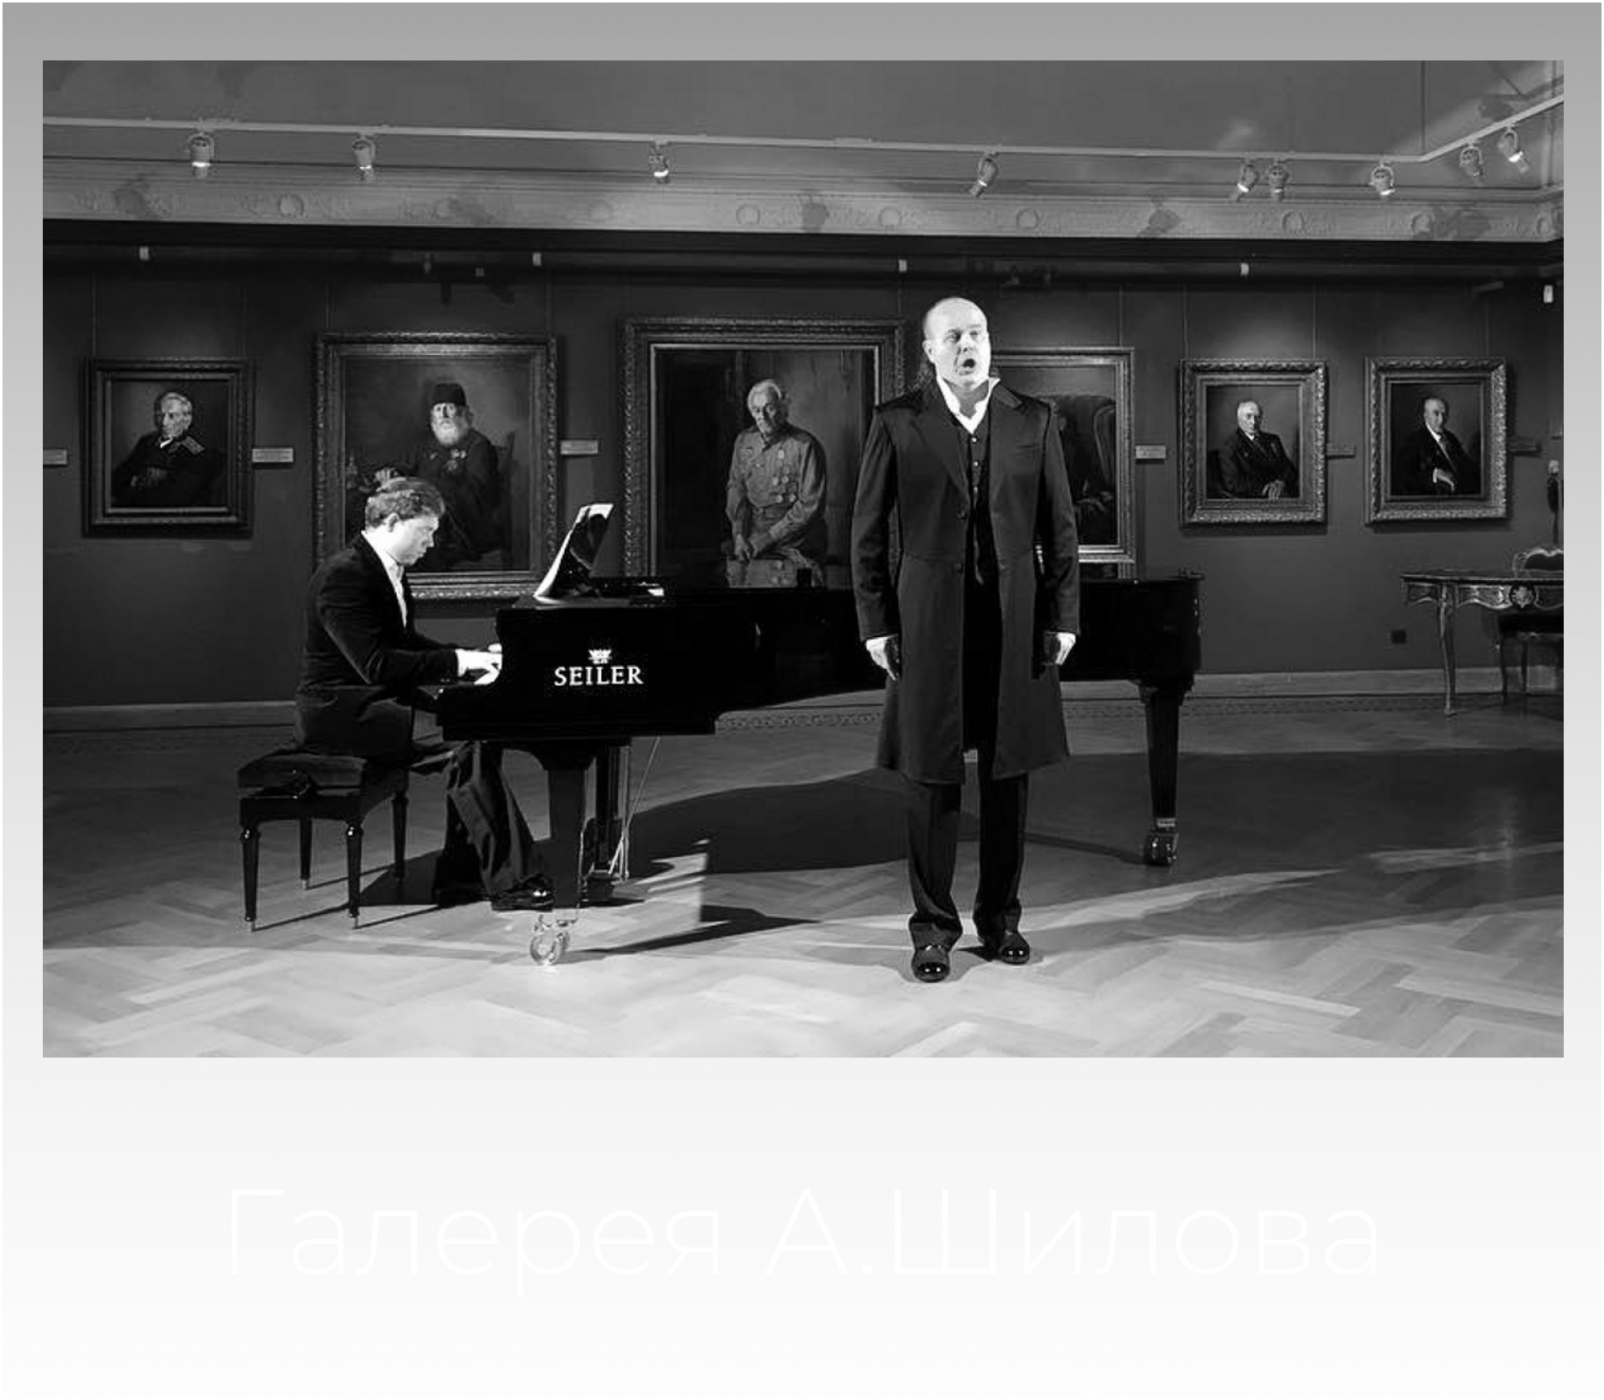 Эстрадный пианист Александр Ершов - галерея Шилова. Аккомпанемент для Юрия Баркова